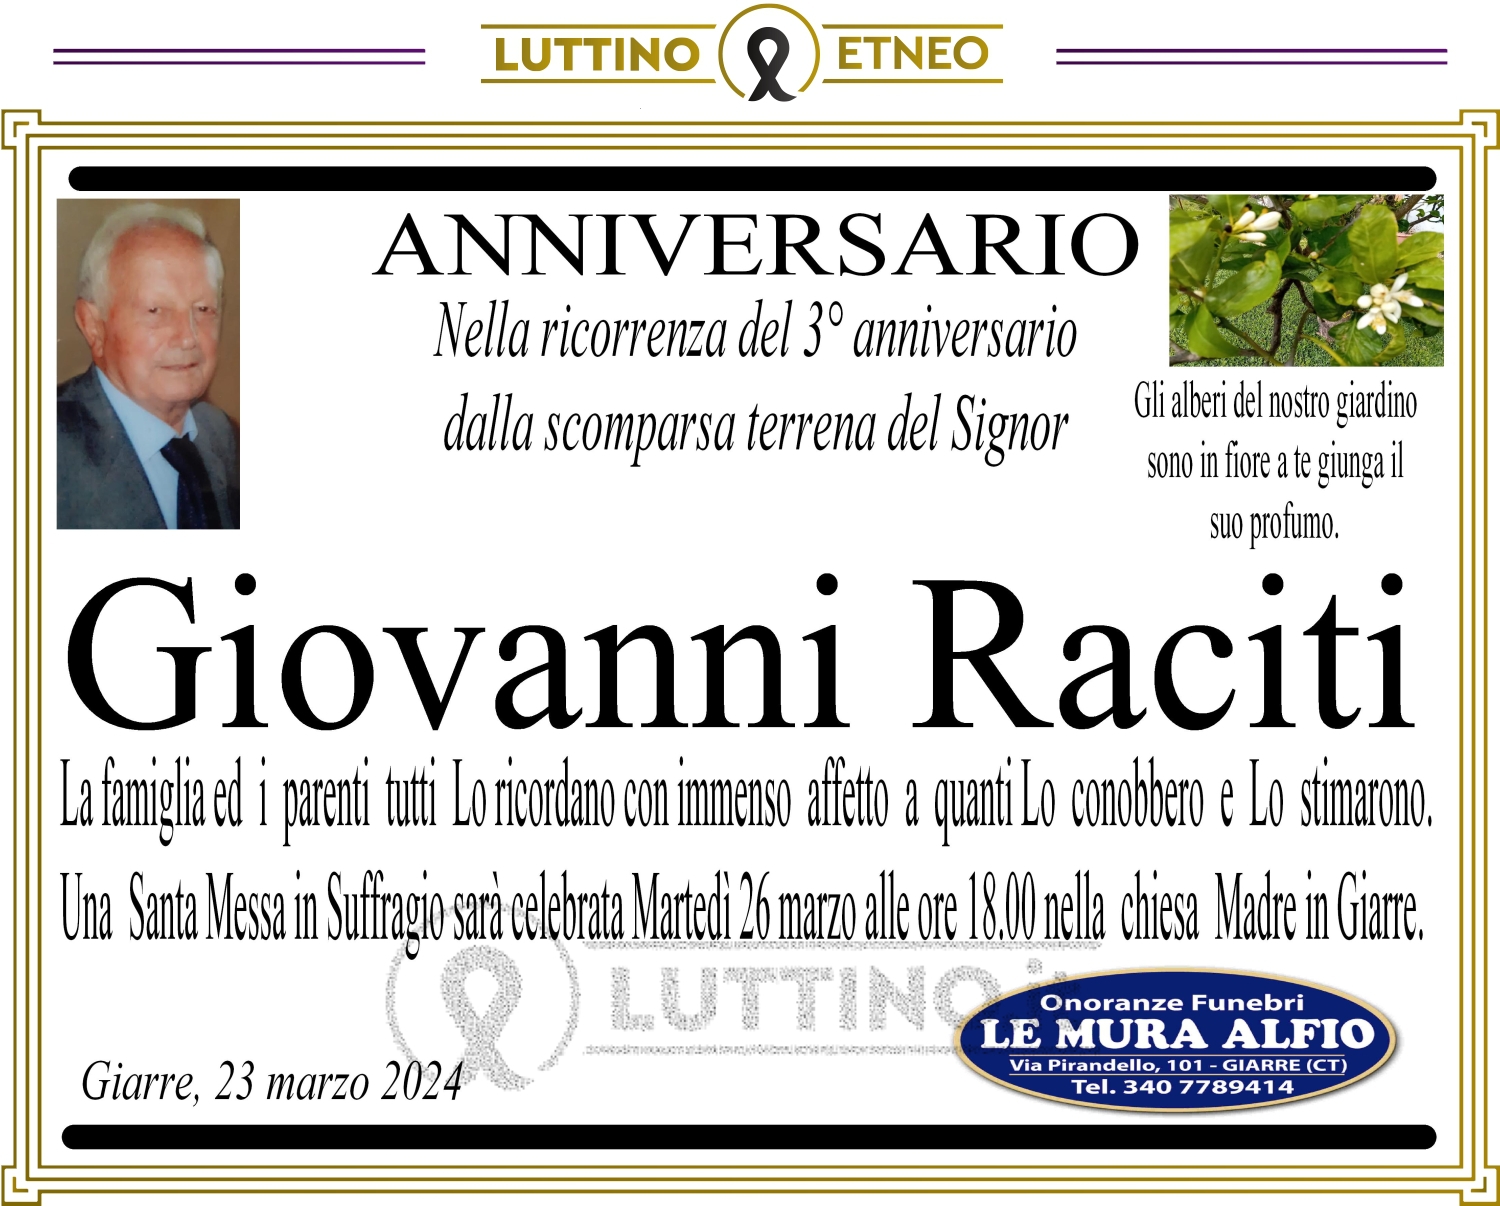 Giovanni Raciti